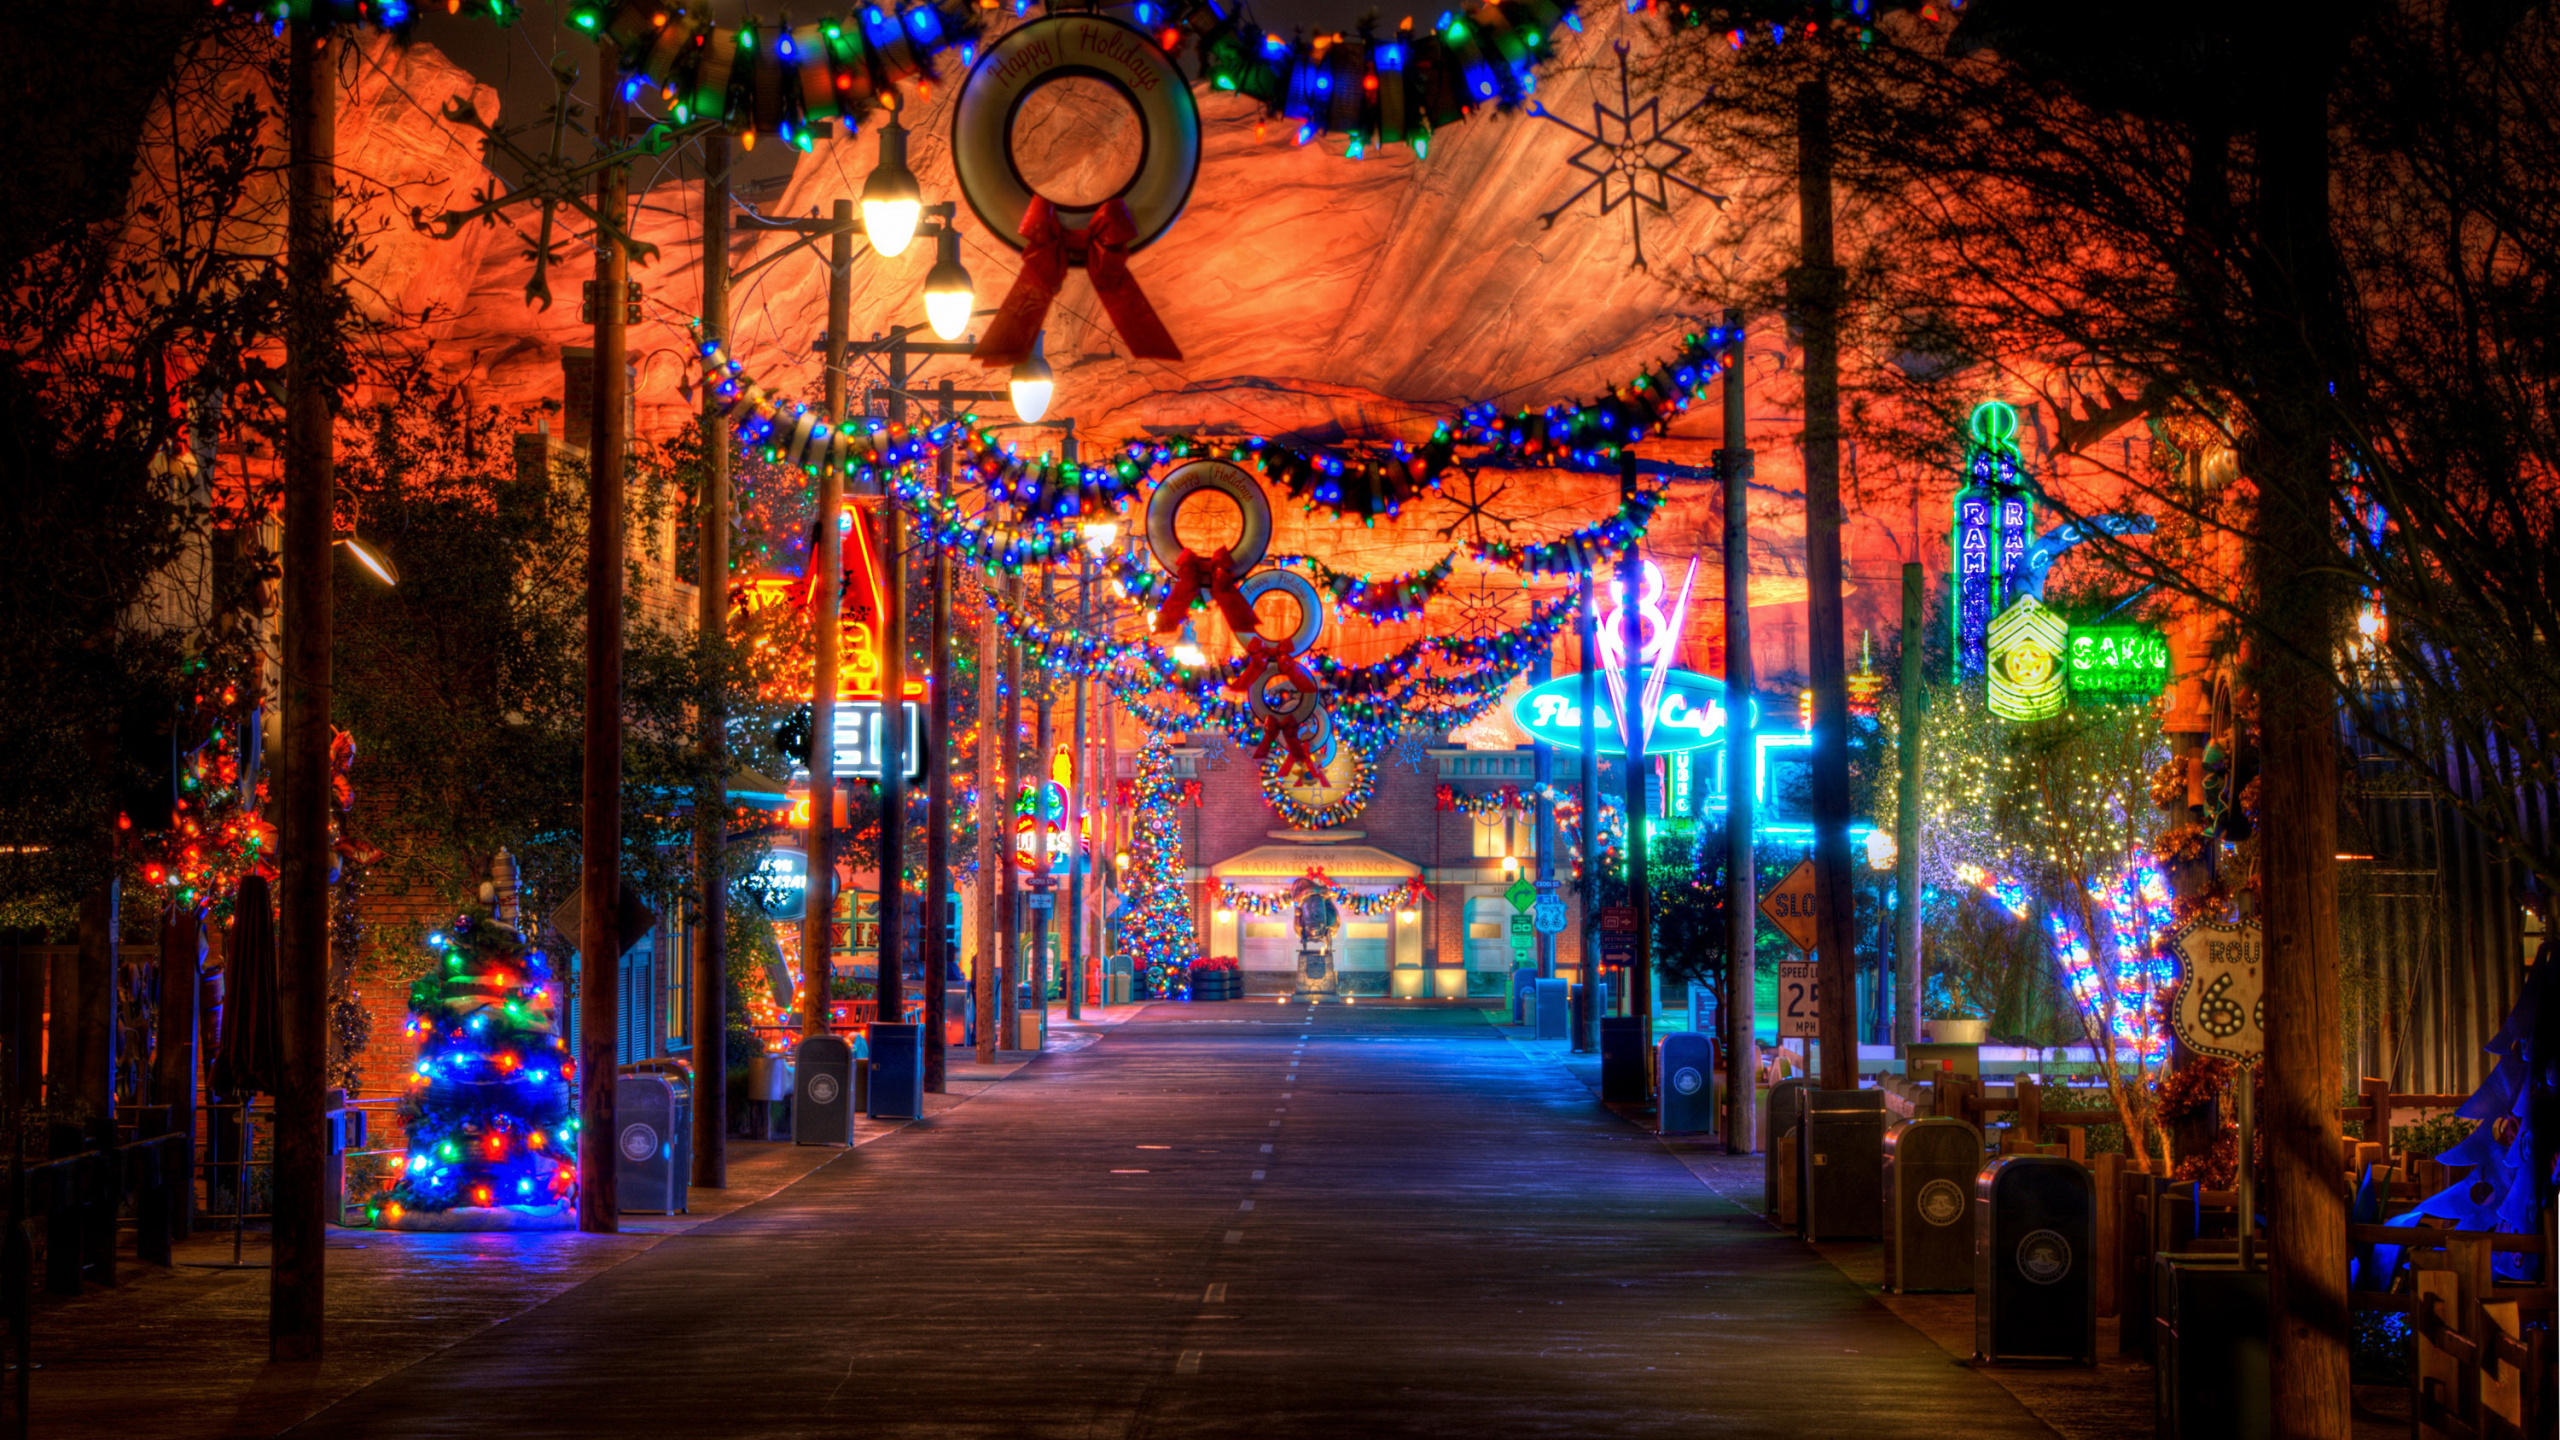 The Walt Disney Company, Licht, Nacht, Weihnachtsbeleuchtung, Baum. Wallpaper in 2560x1440 Resolution